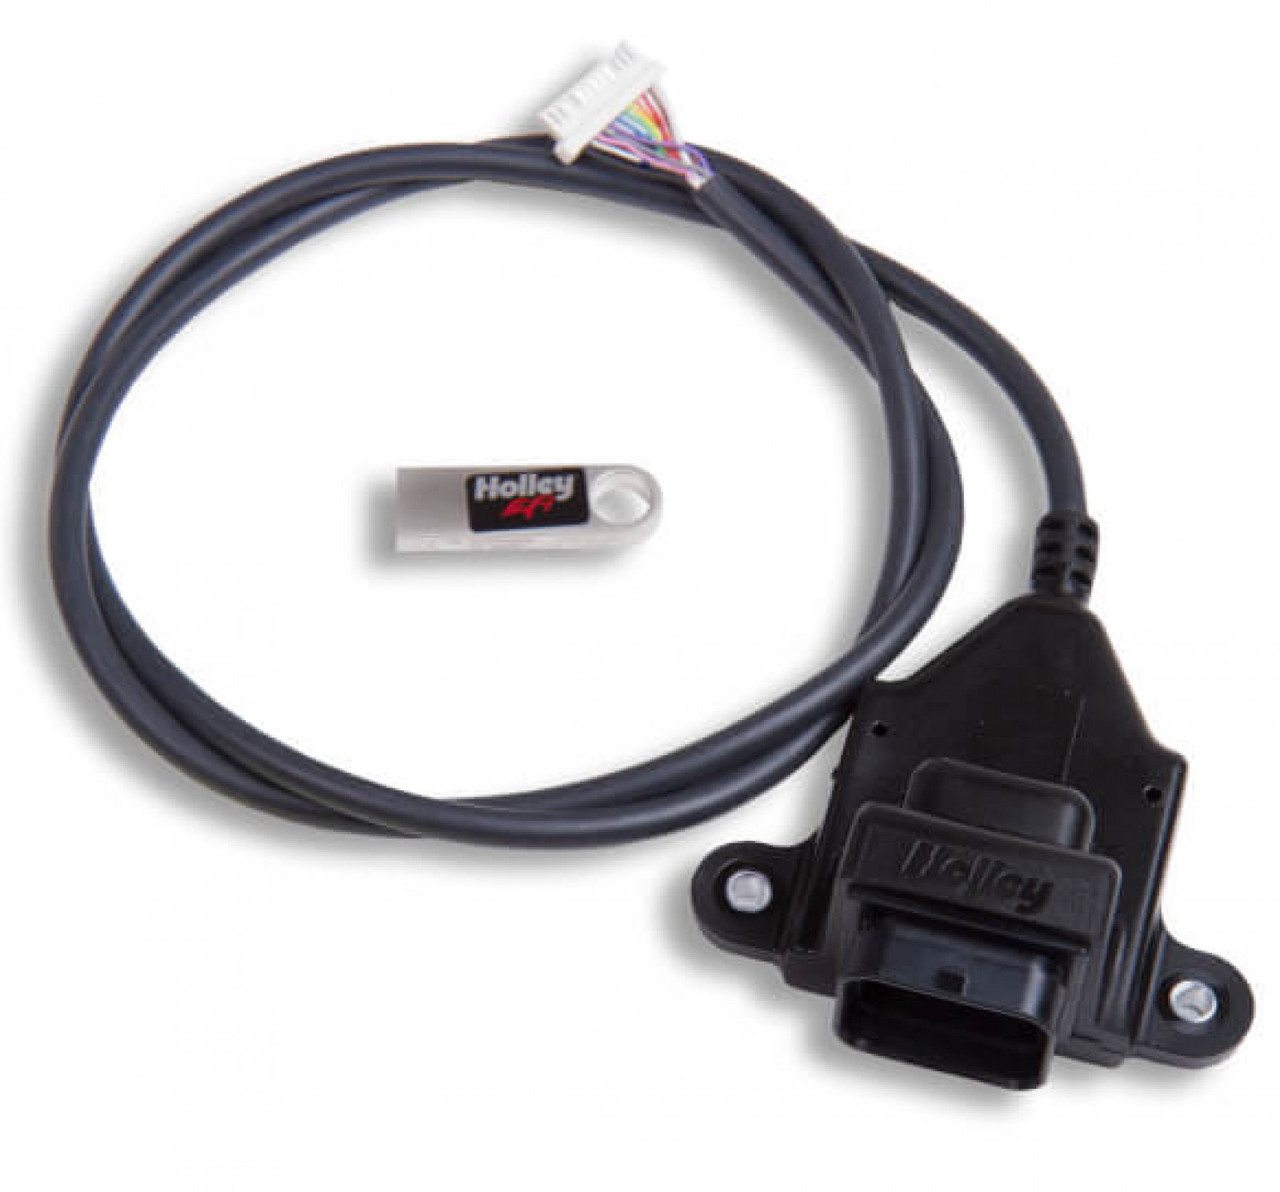 Holley EFI Digital Dash I/O Adapter (HOE-2558-432)